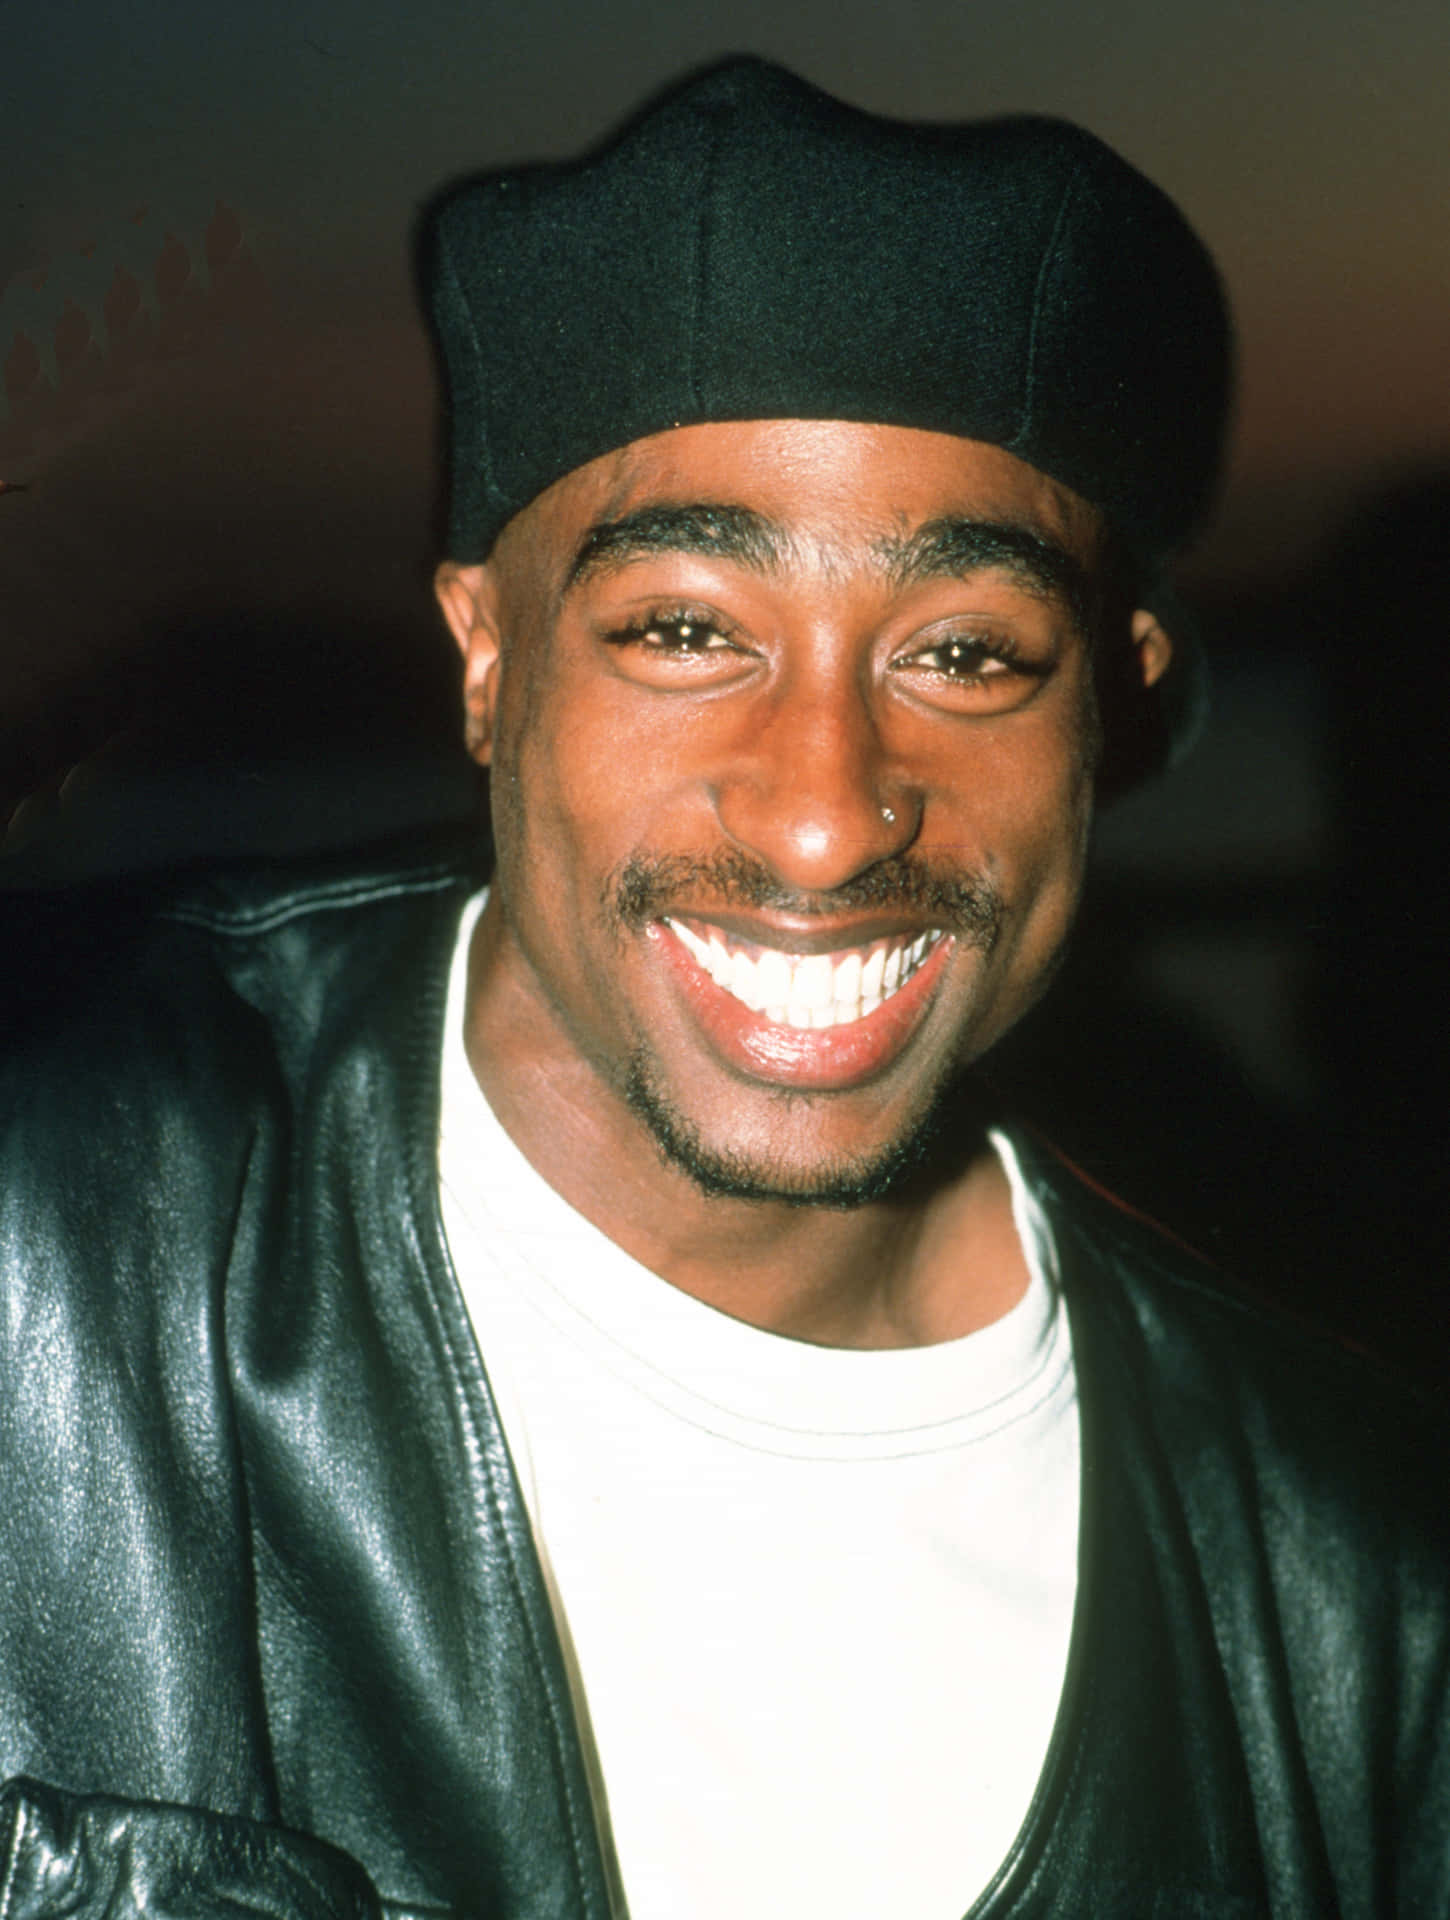 L'ereditàdi Tupac Shakur Continua A Vivere.